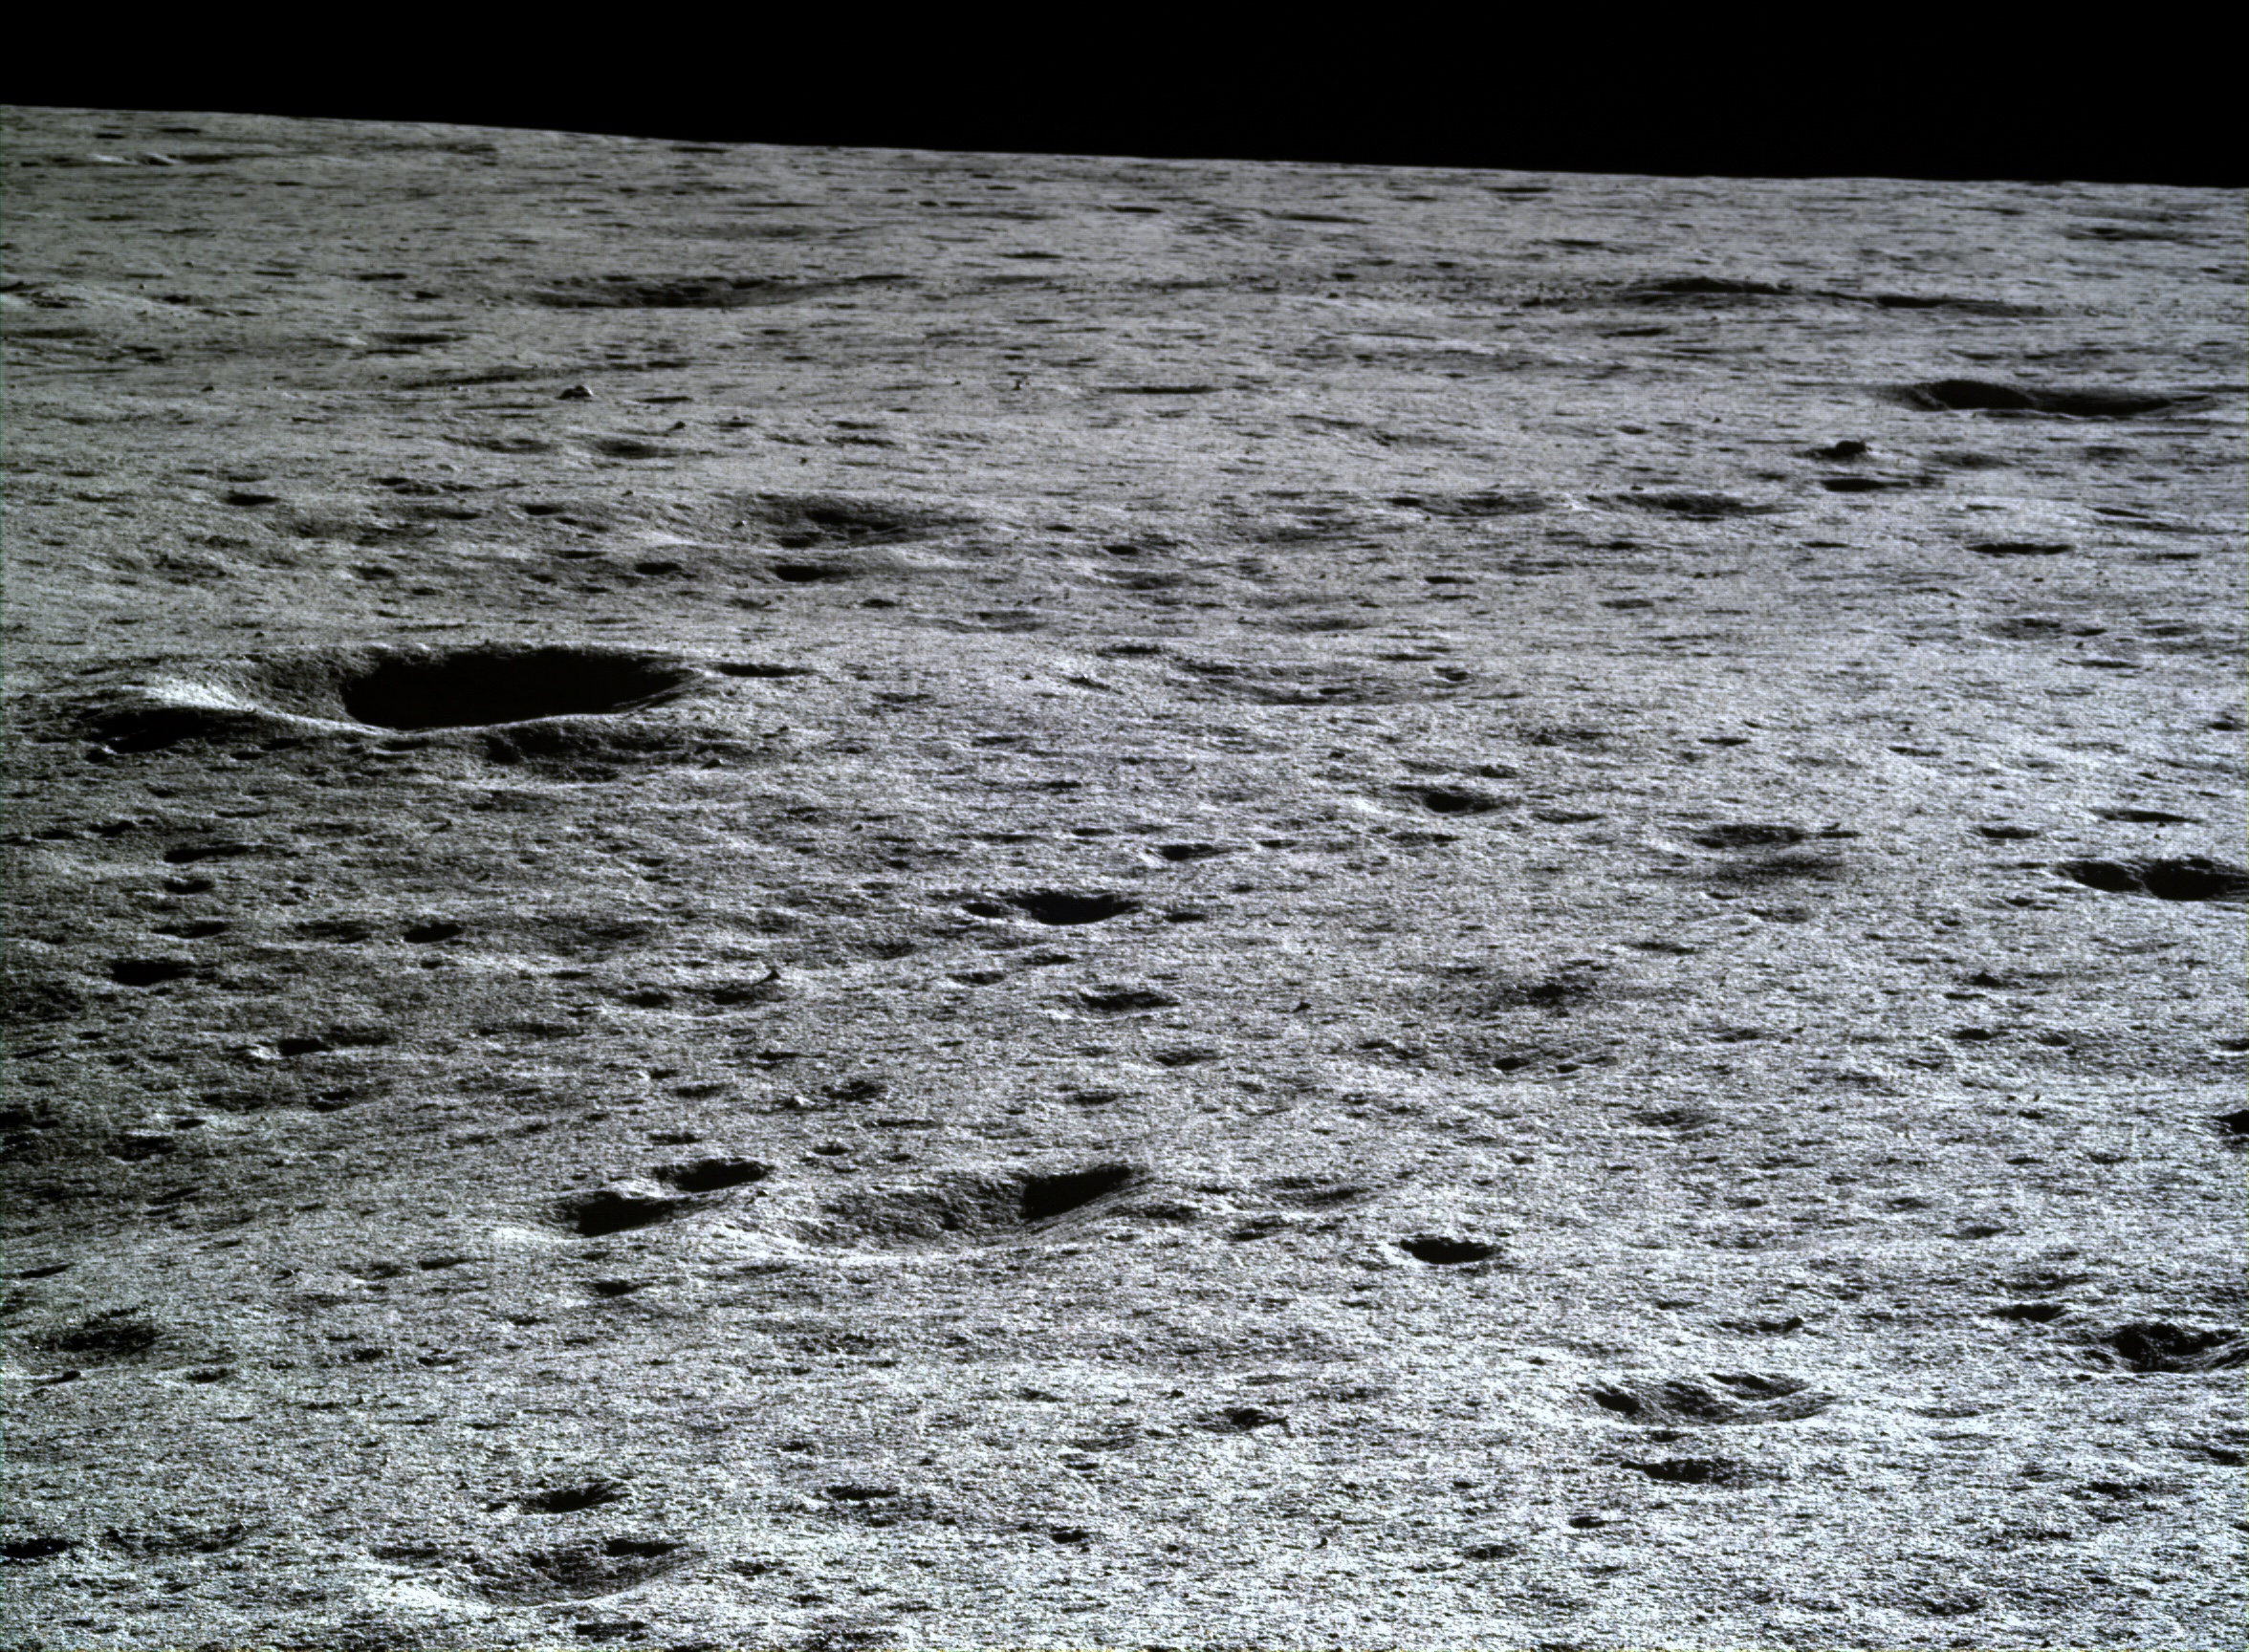 Los cráteres de impacto podrían arrojar luz sobre la composición de la Luna